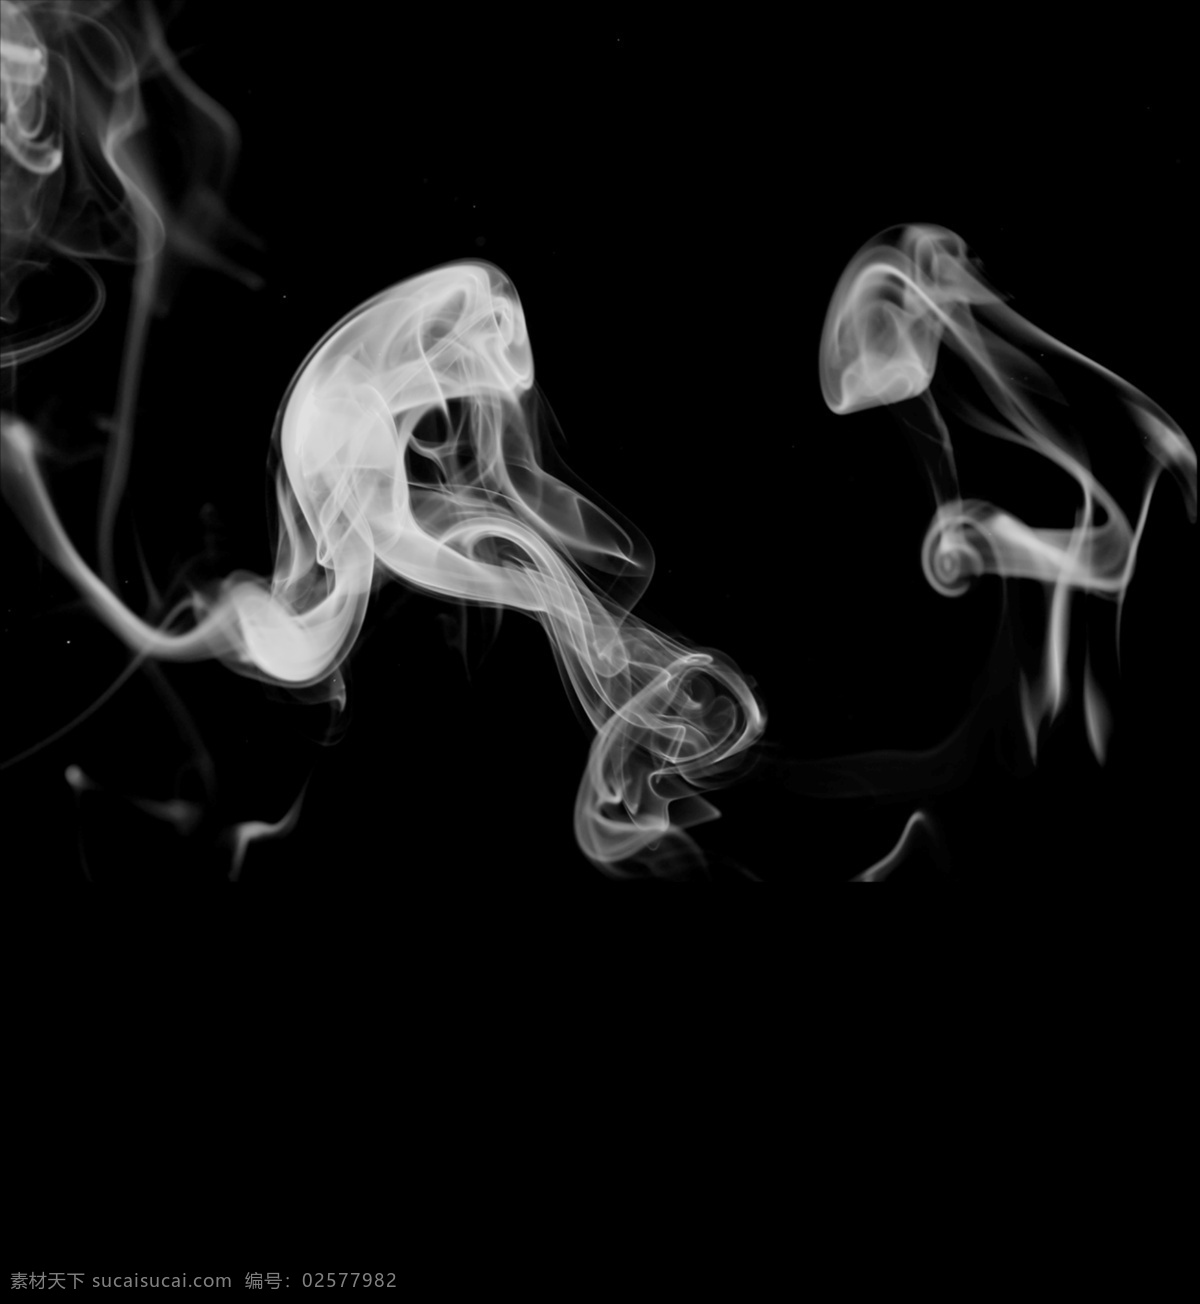 烟雾图片 烟雾 烟雾素材 烟雾背景 透明烟雾 白色烟雾 基本素材